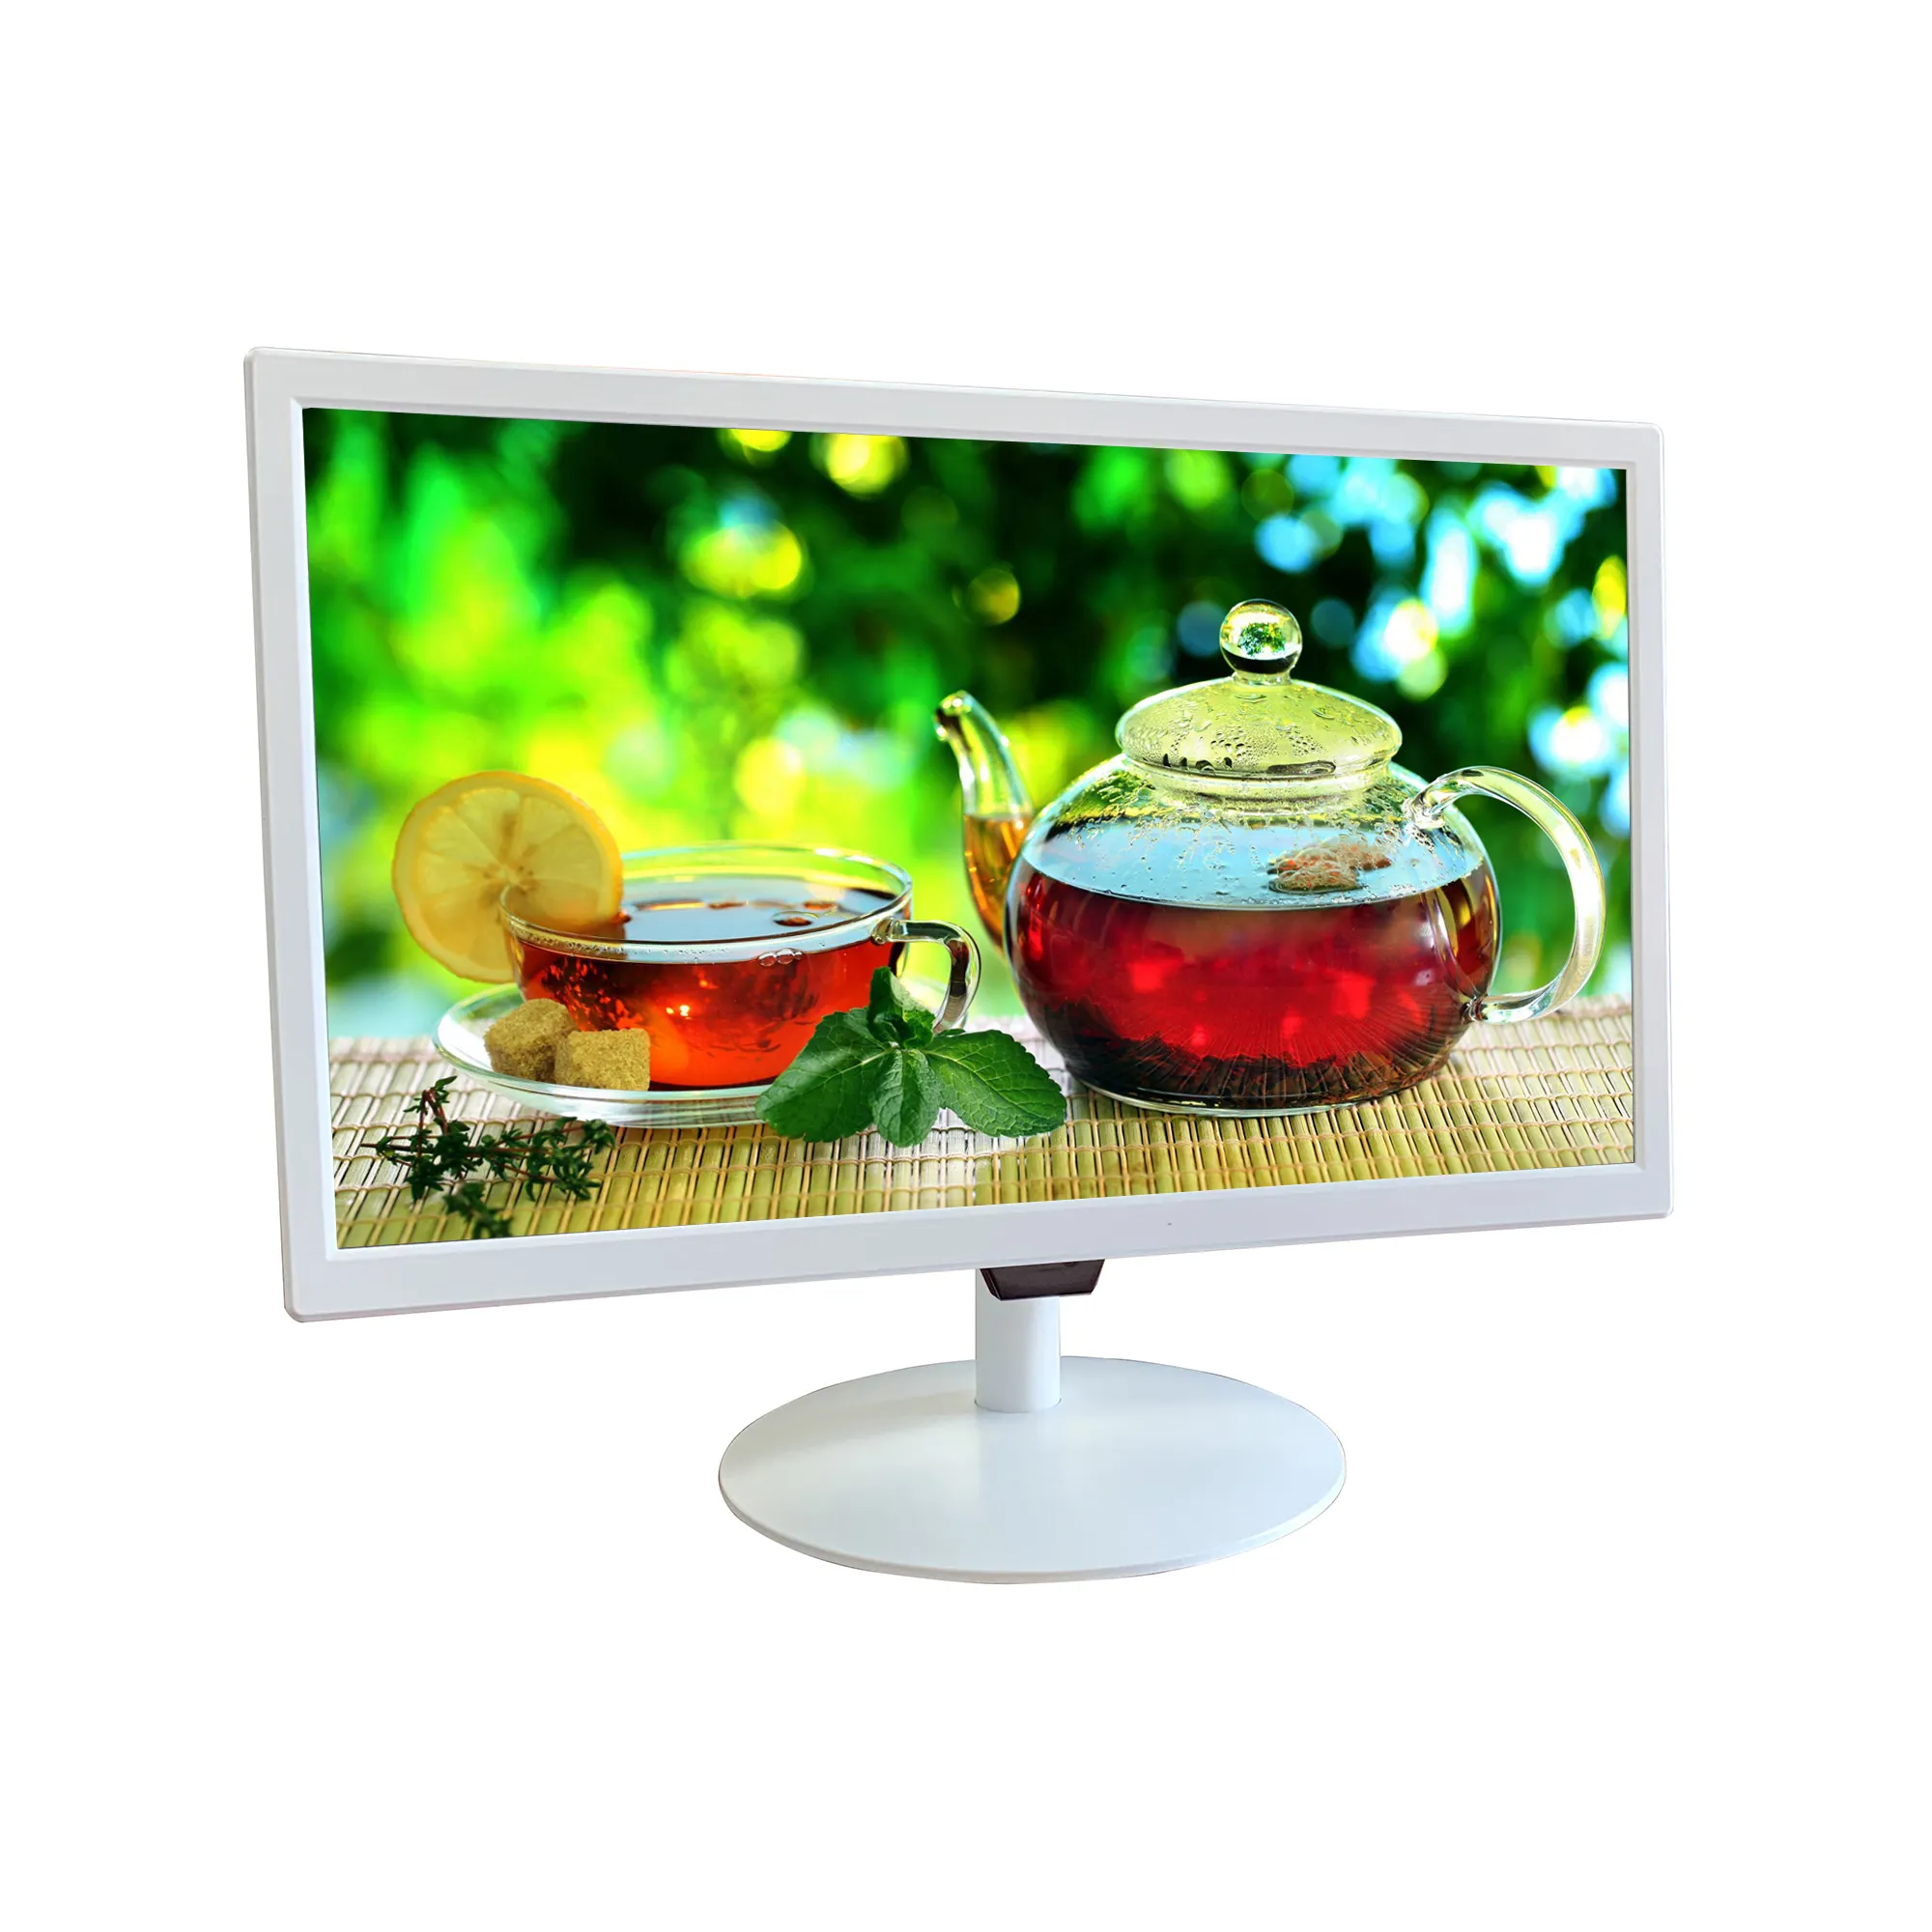 18.5 pollici di nuovo disegno bianco 1080p pc desktop del computer di visualizzazione del monitor